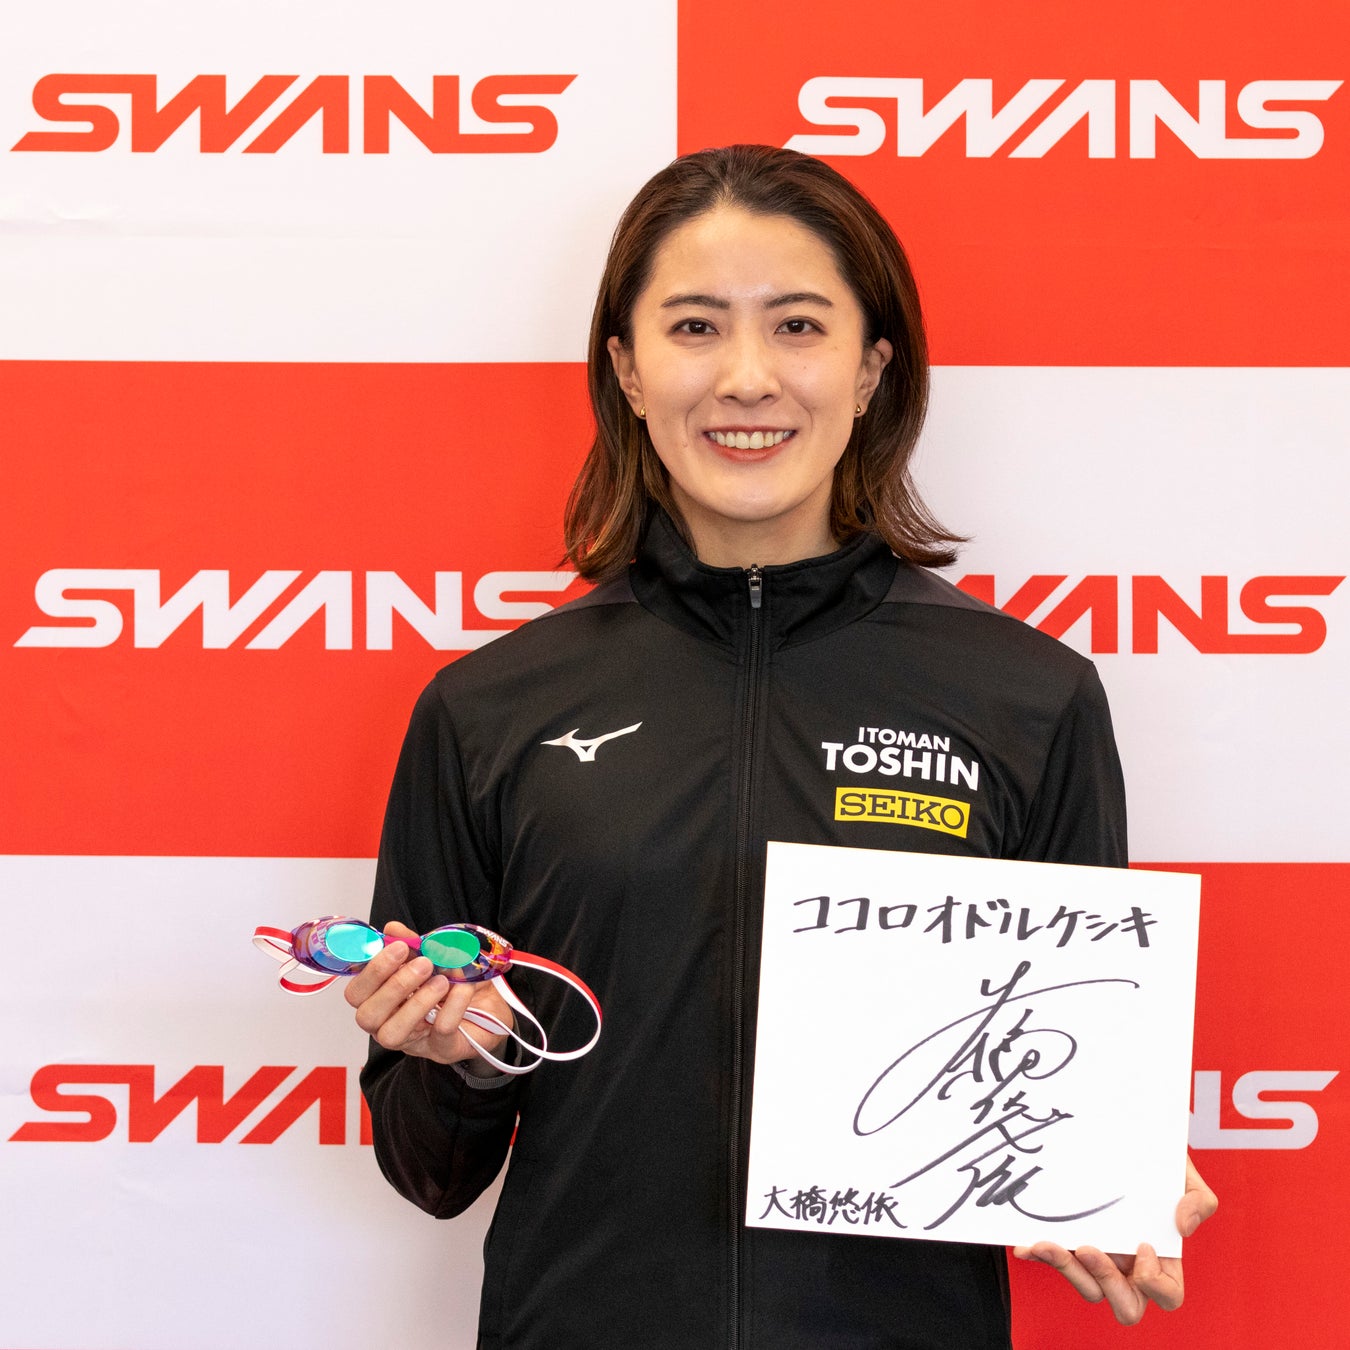 「SWANS」×競泳・大橋悠依選手 アドバイザリースタッフ契約を締結